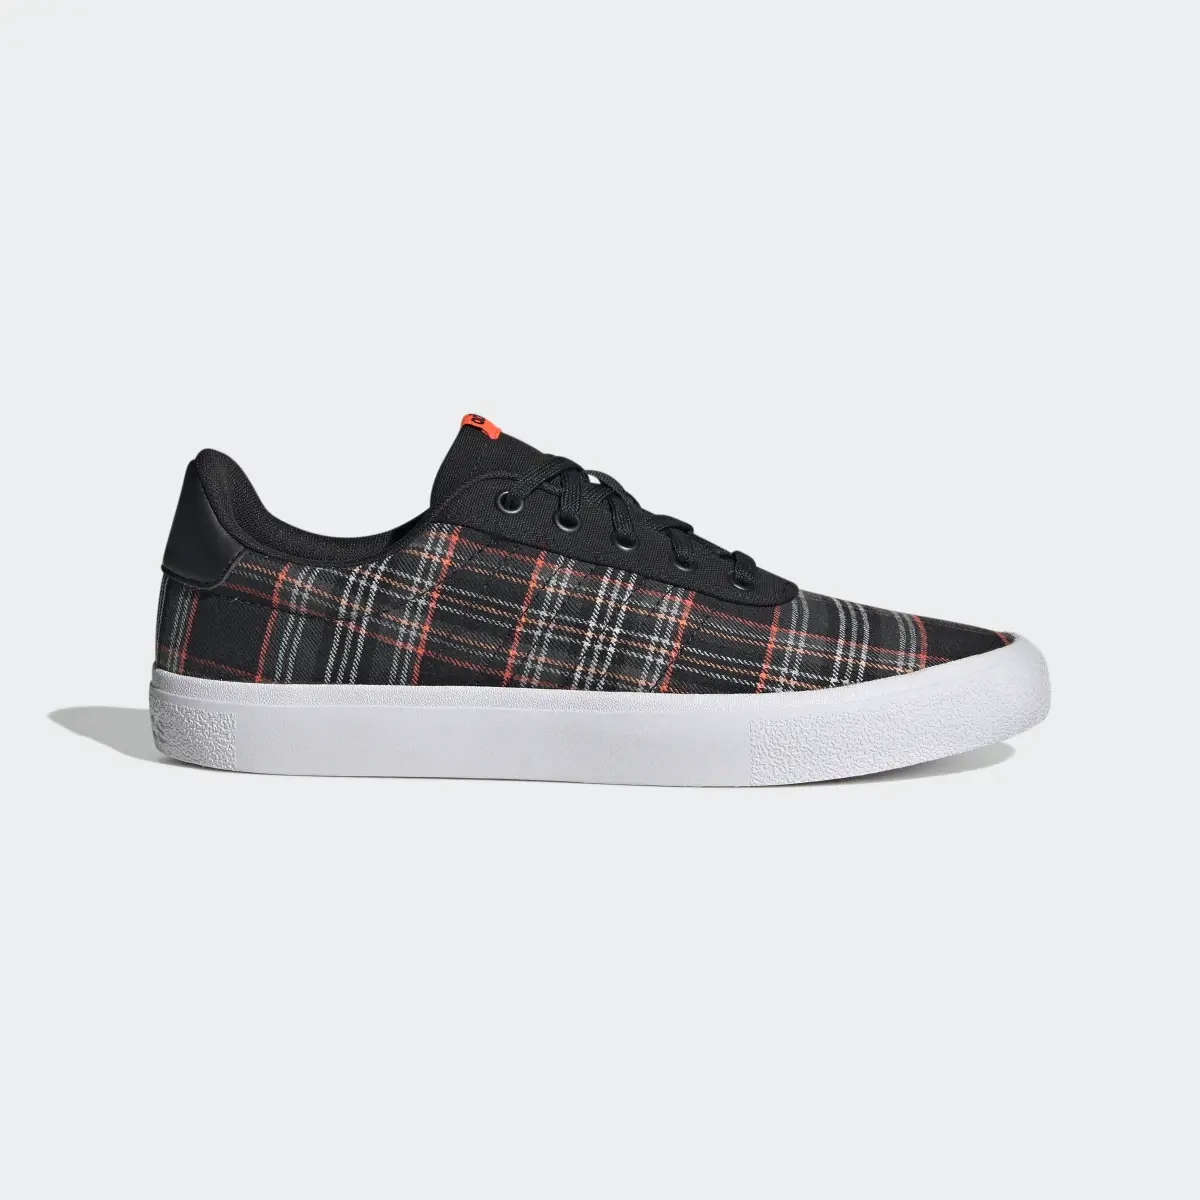 Adidas Chaussure Vulc Raid3r Lifestyle Skateboarding 3-Stripes Branding. 2